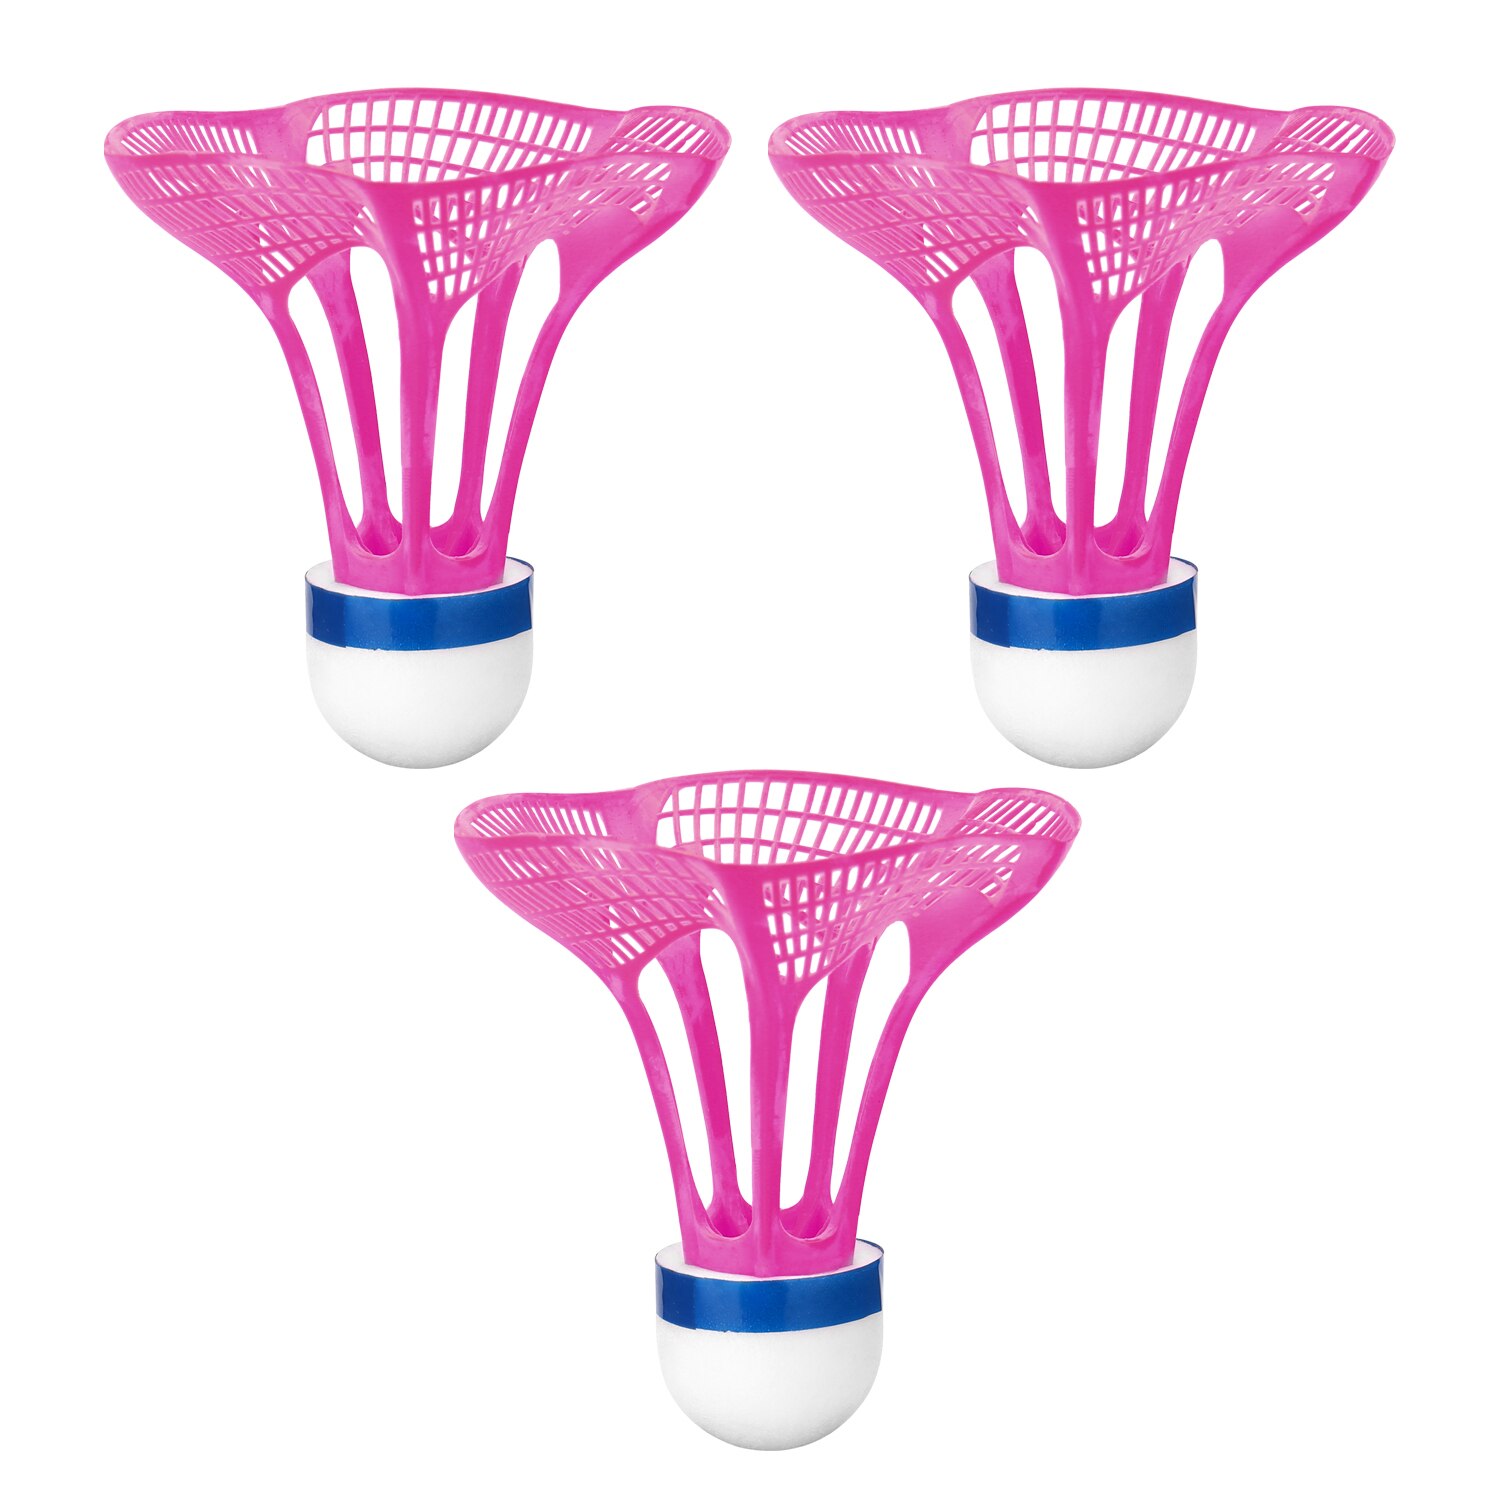 3 stk / pakke udendørs badmintonbold plastbold sport træning træningsbolte farve badmintonbold: Lilla